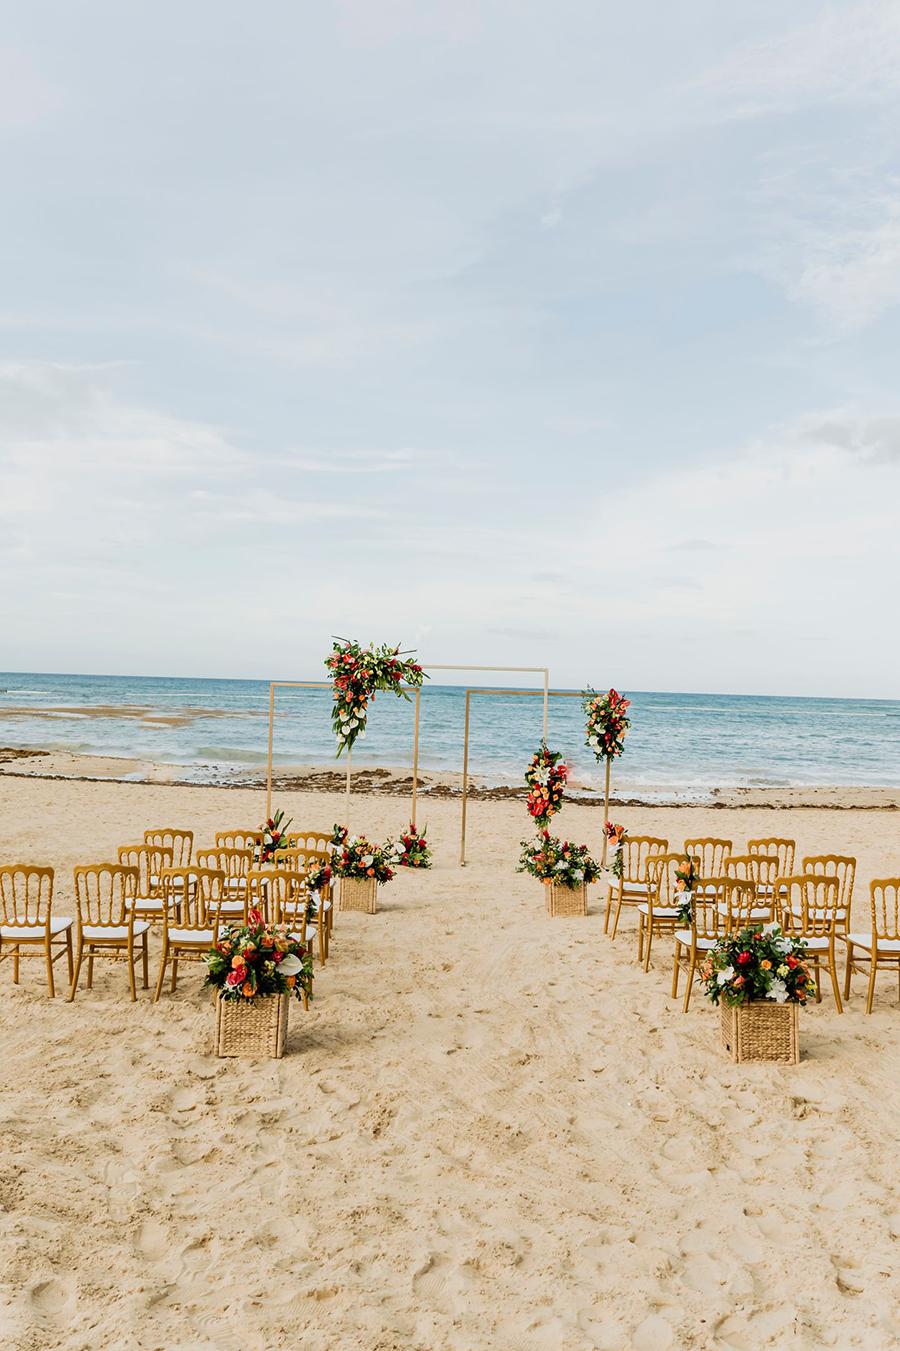 Dreams Onyx: grandioso hotel para casamentos em Punta Cana